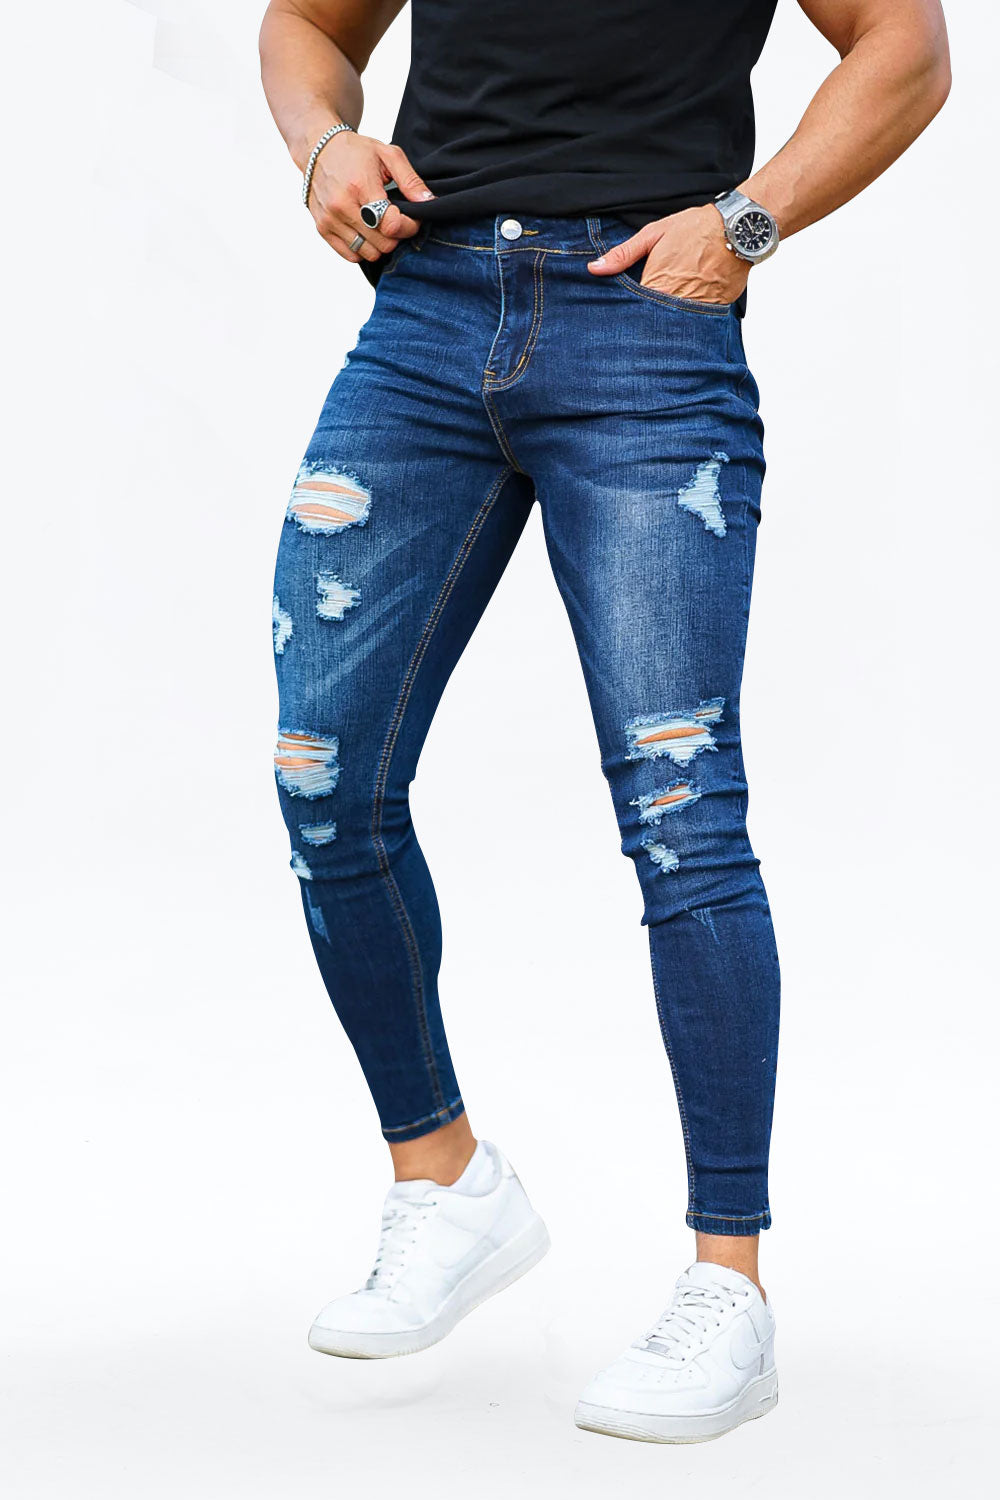 Schwarze stilvolle Röhrenjeans Slim GINGTTO Fit Jeans|Stretch-Jeans für Rabatt|Röhrenjeans| – % für Herren|Zerrissene Herren|50 Röhrenjeans Jeans|Herren